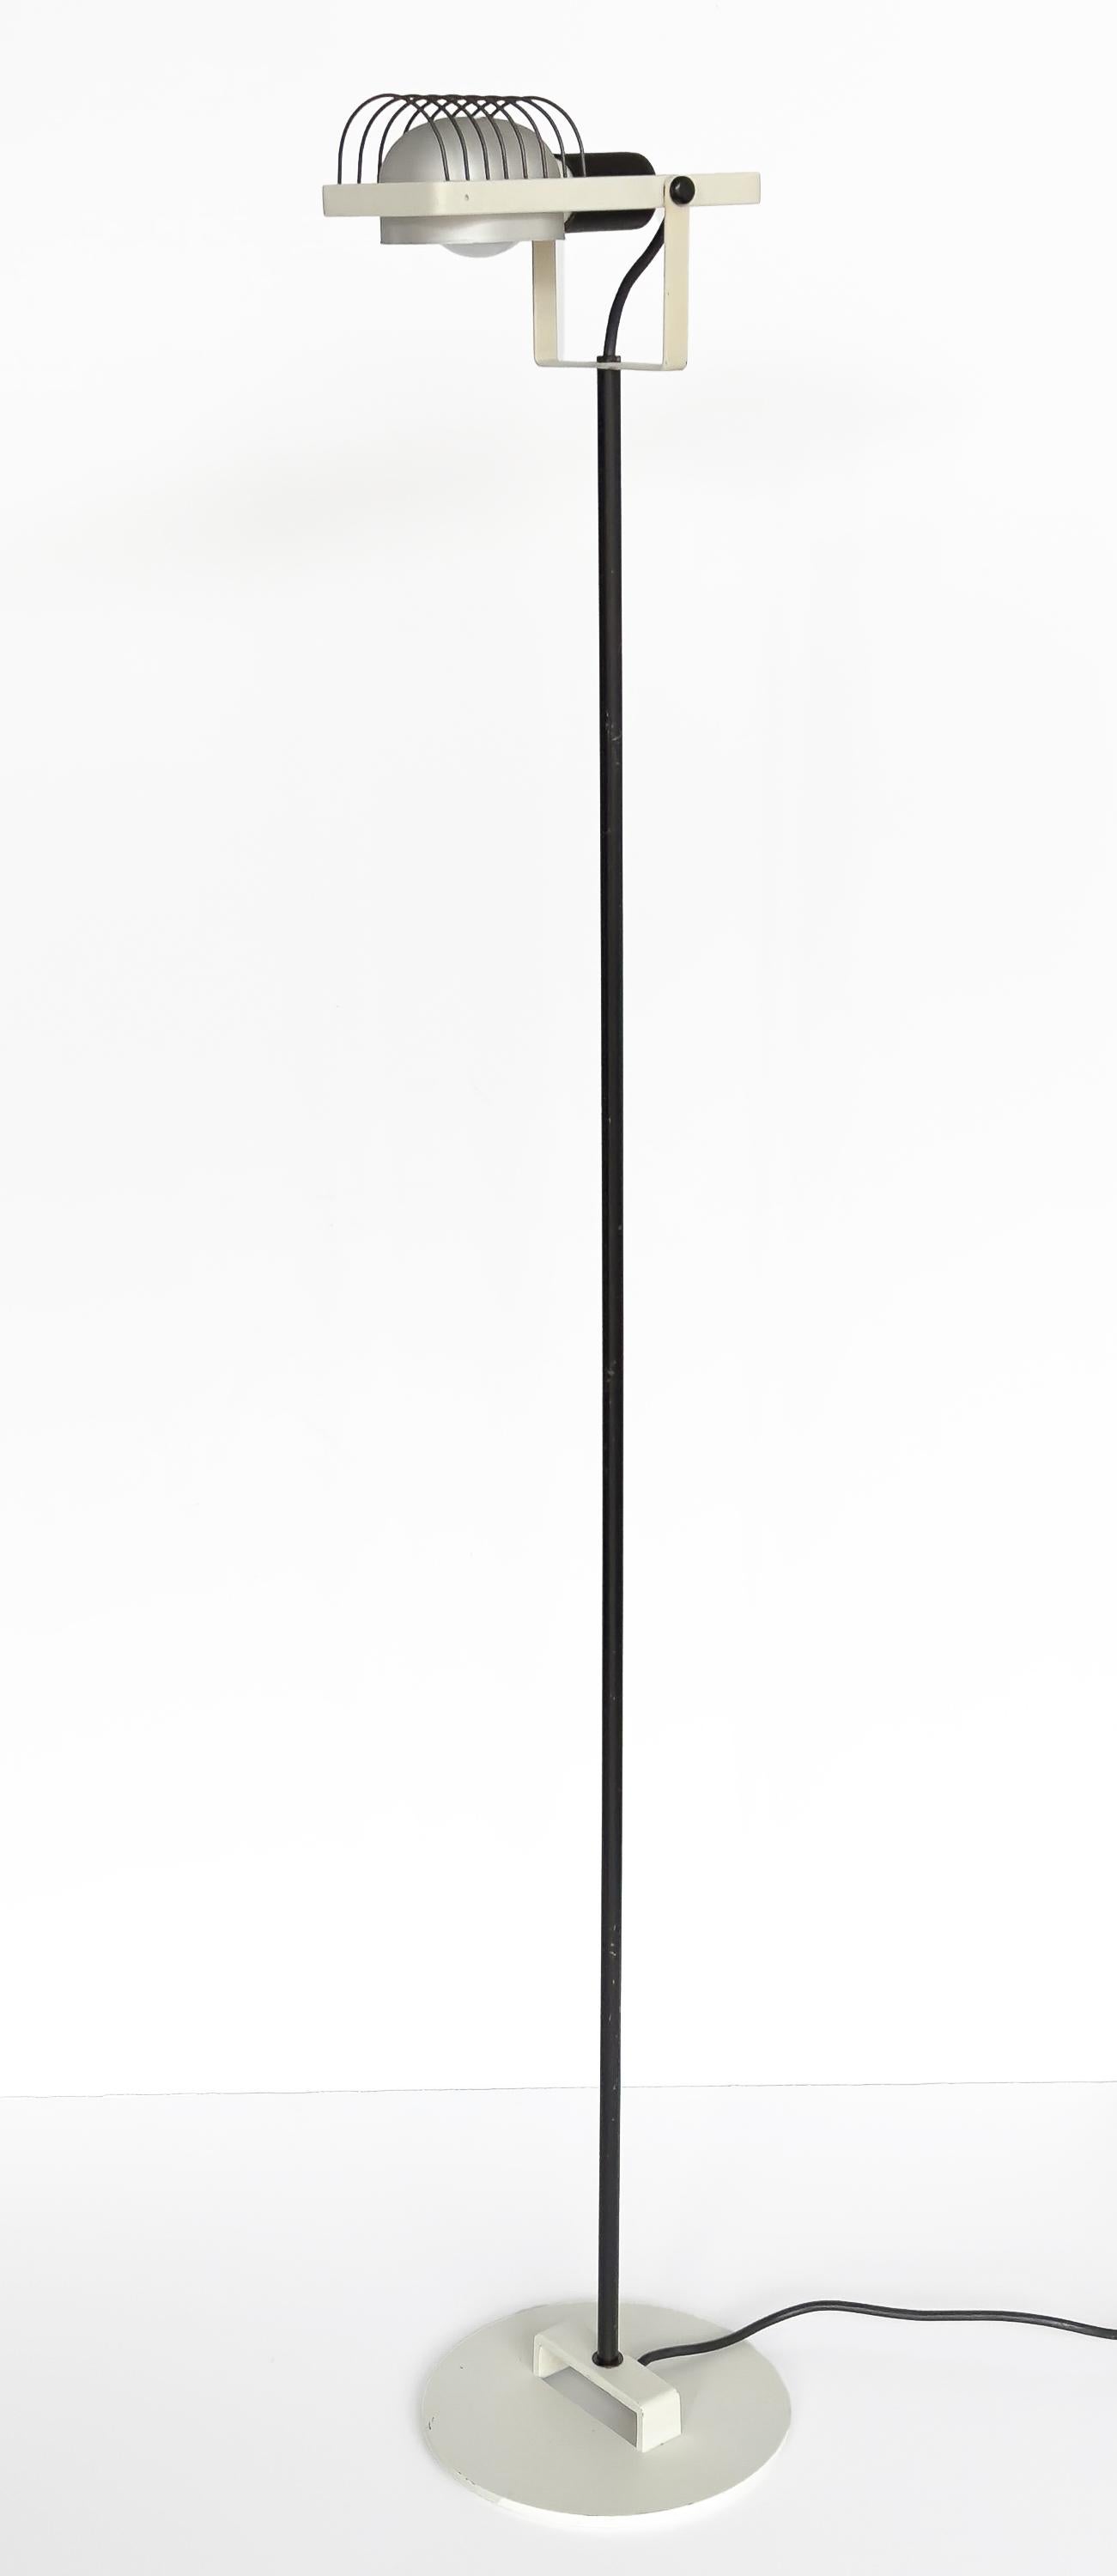 Lampadaire Sintesi Terra noir et blanc d'Ernesto Gismodi pour Artemide, Italie, vers les années 1970.  Ce lampadaire postmoderne présente une base / tête de lampe en métal émaillé blanc, ainsi qu'une tige émaillée noire et un logement en cage pour